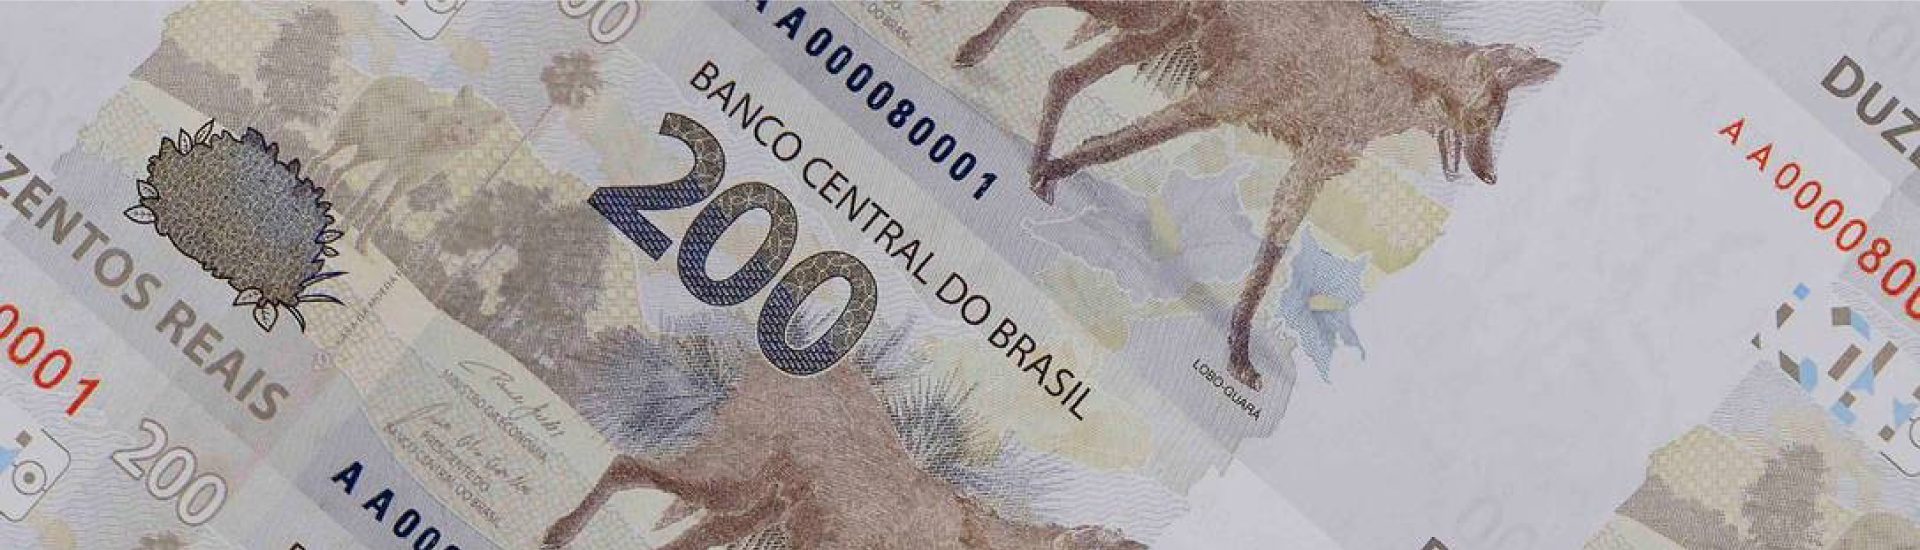 Descubra mais sobre a nota de 200 reais no post!